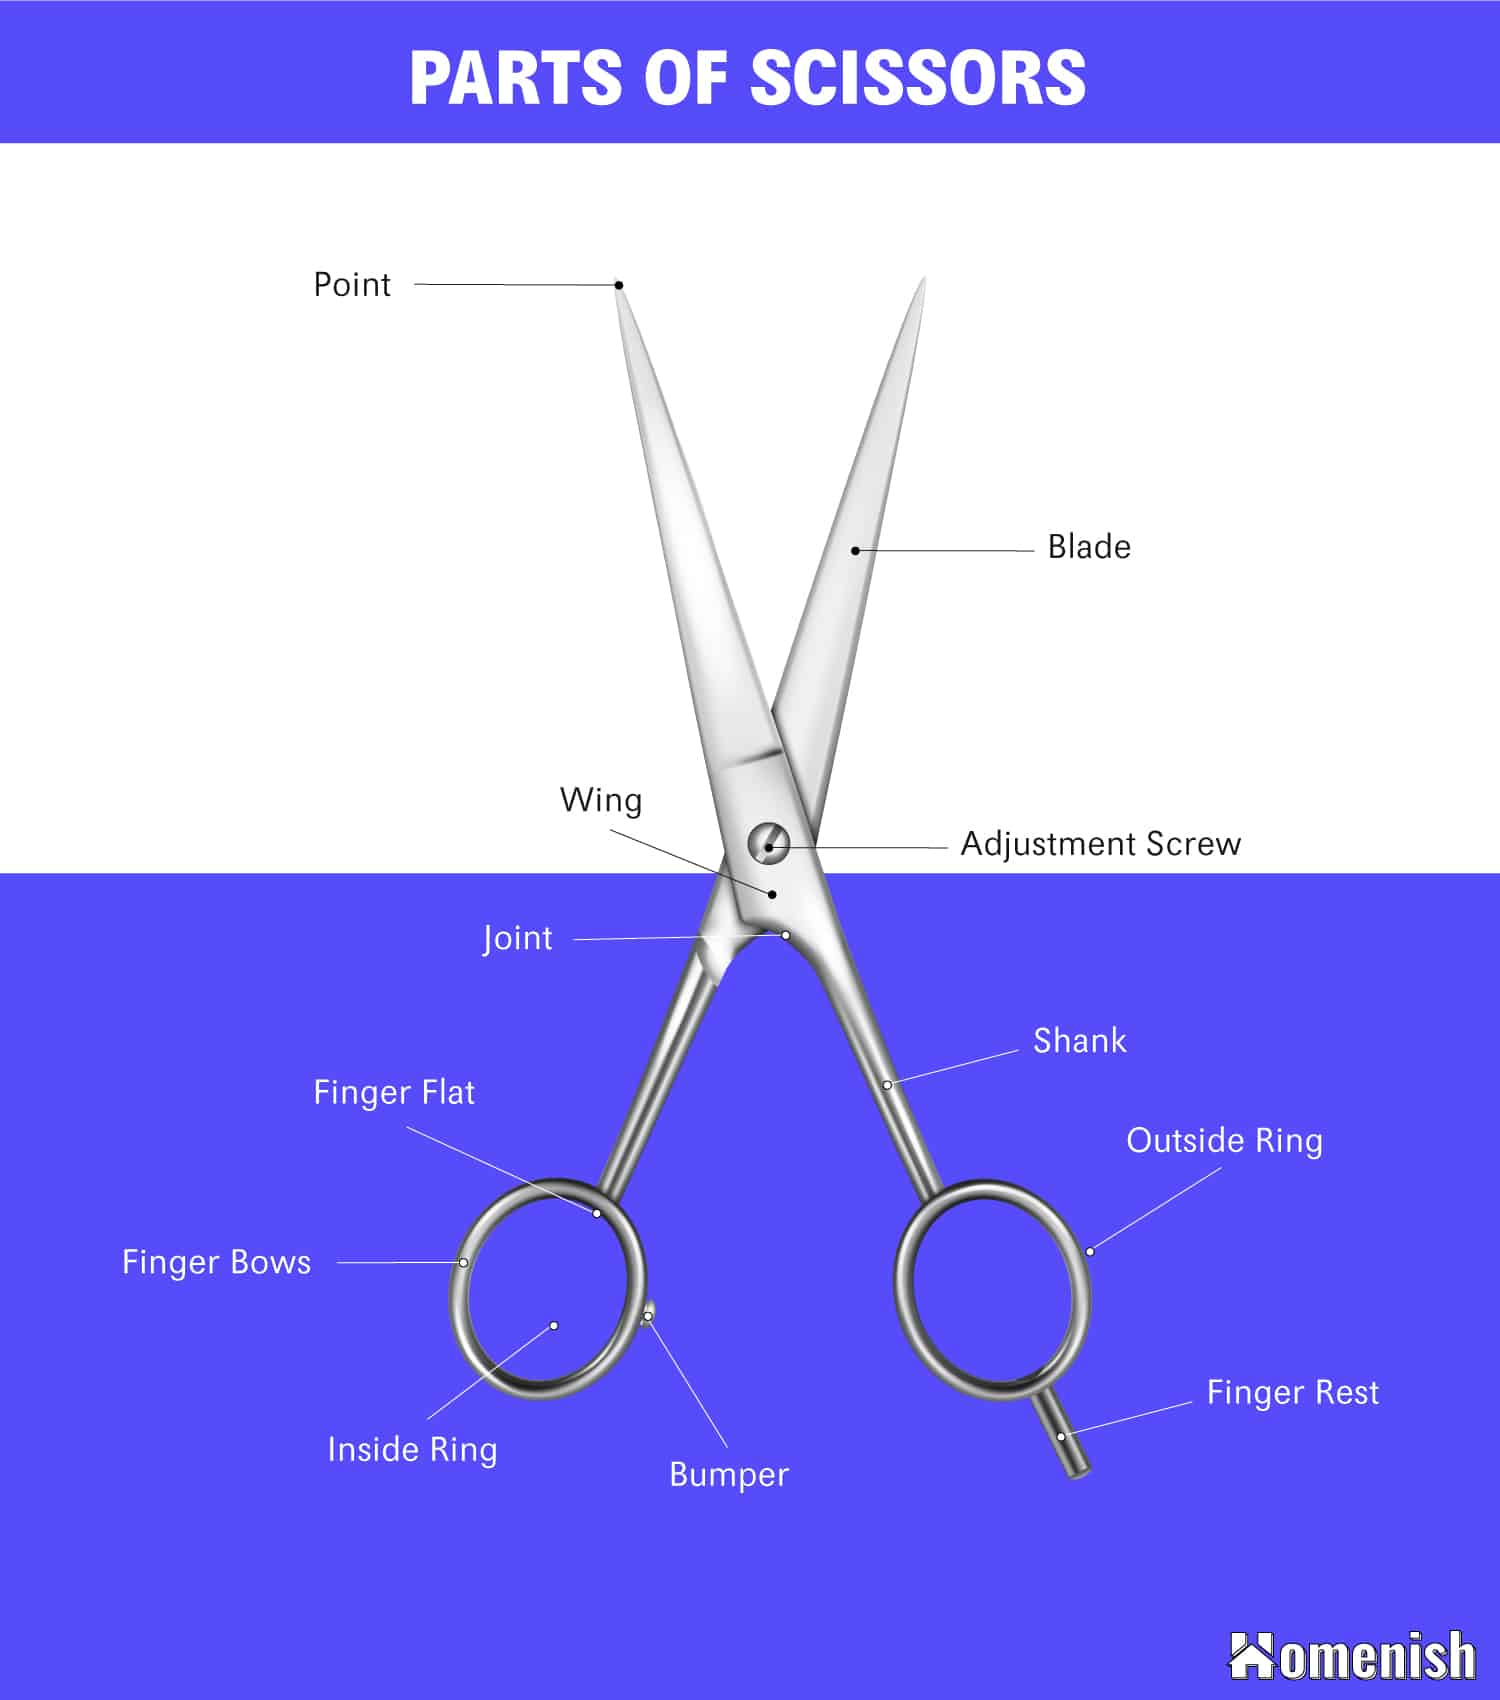 Parts of Scissors